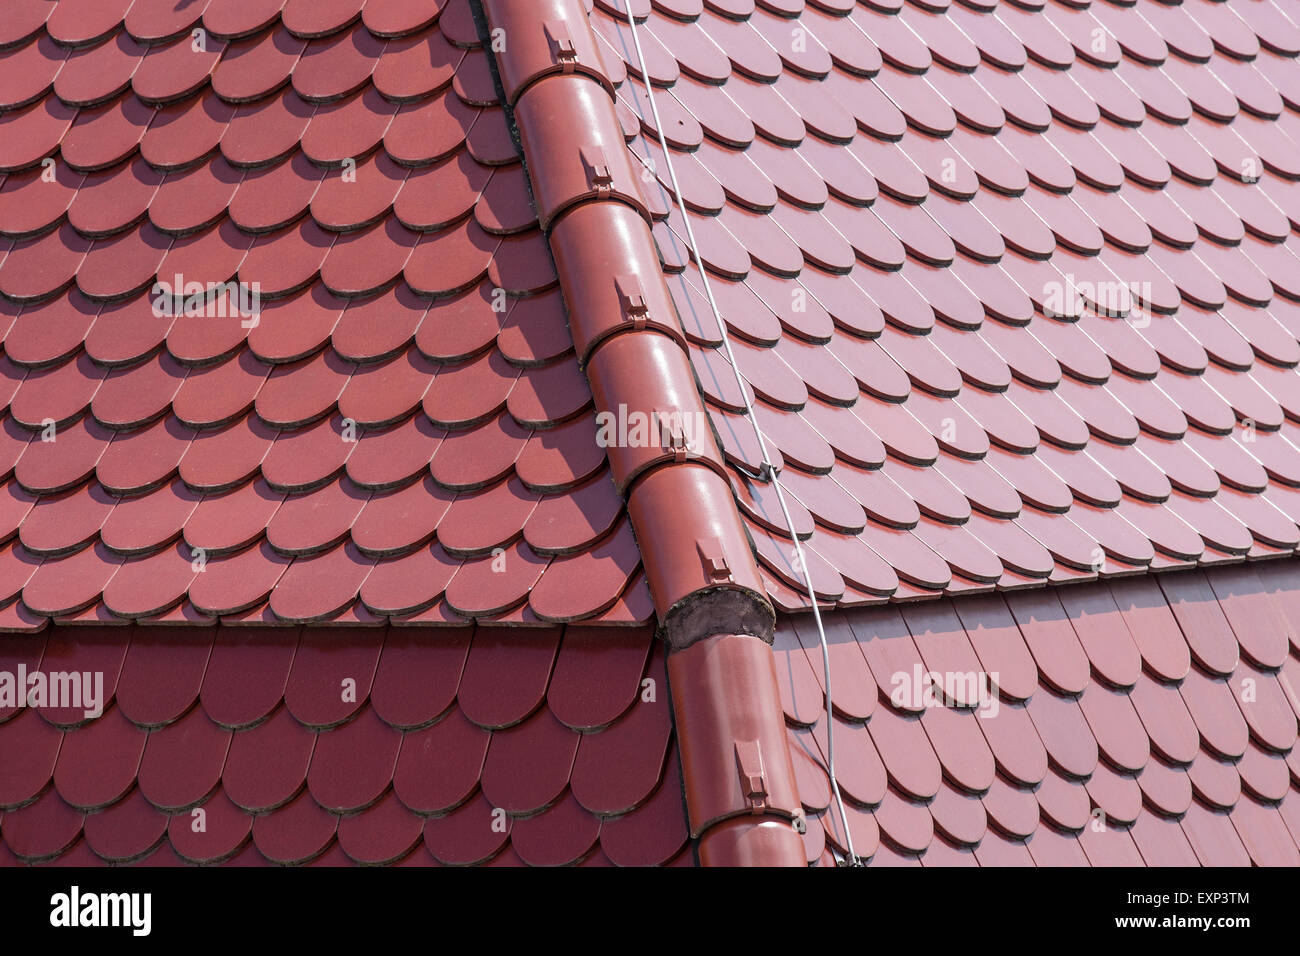 Tiles, roof, detail, Stuttgart, Baden-Württemberg, Germany Stock Photo